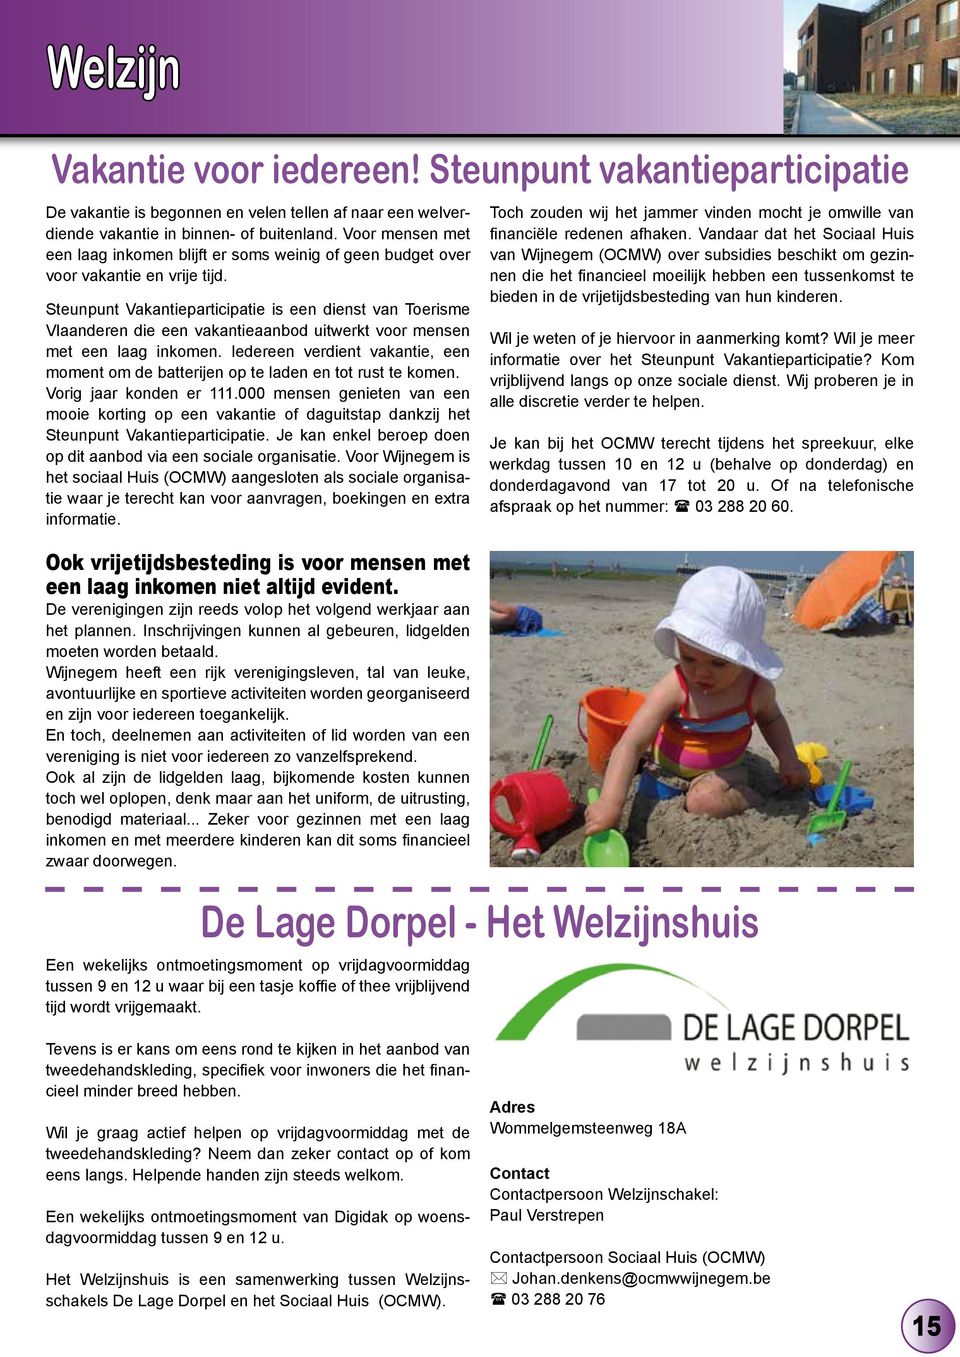 Steunpunt Vakantieparticipatie is een dienst van Toerisme Vlaanderen die een vakantieaanbod uitwerkt voor mensen met een laag inkomen.